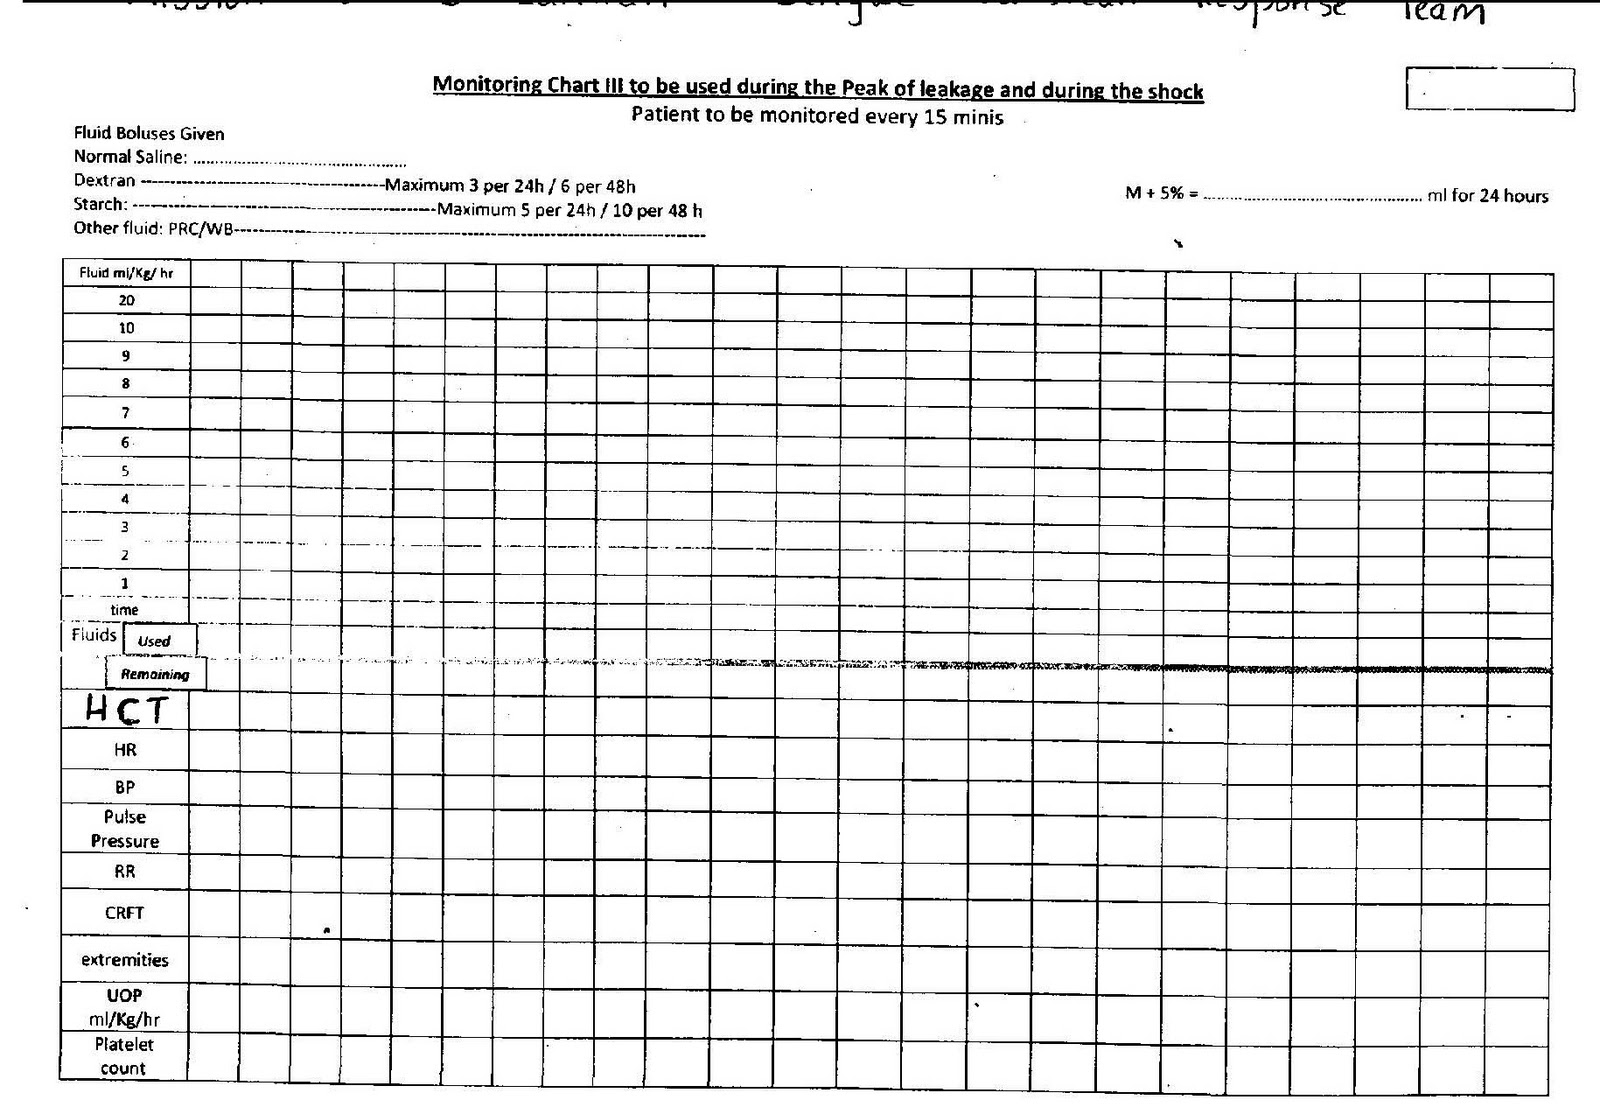 Dengue Monitoring Chart